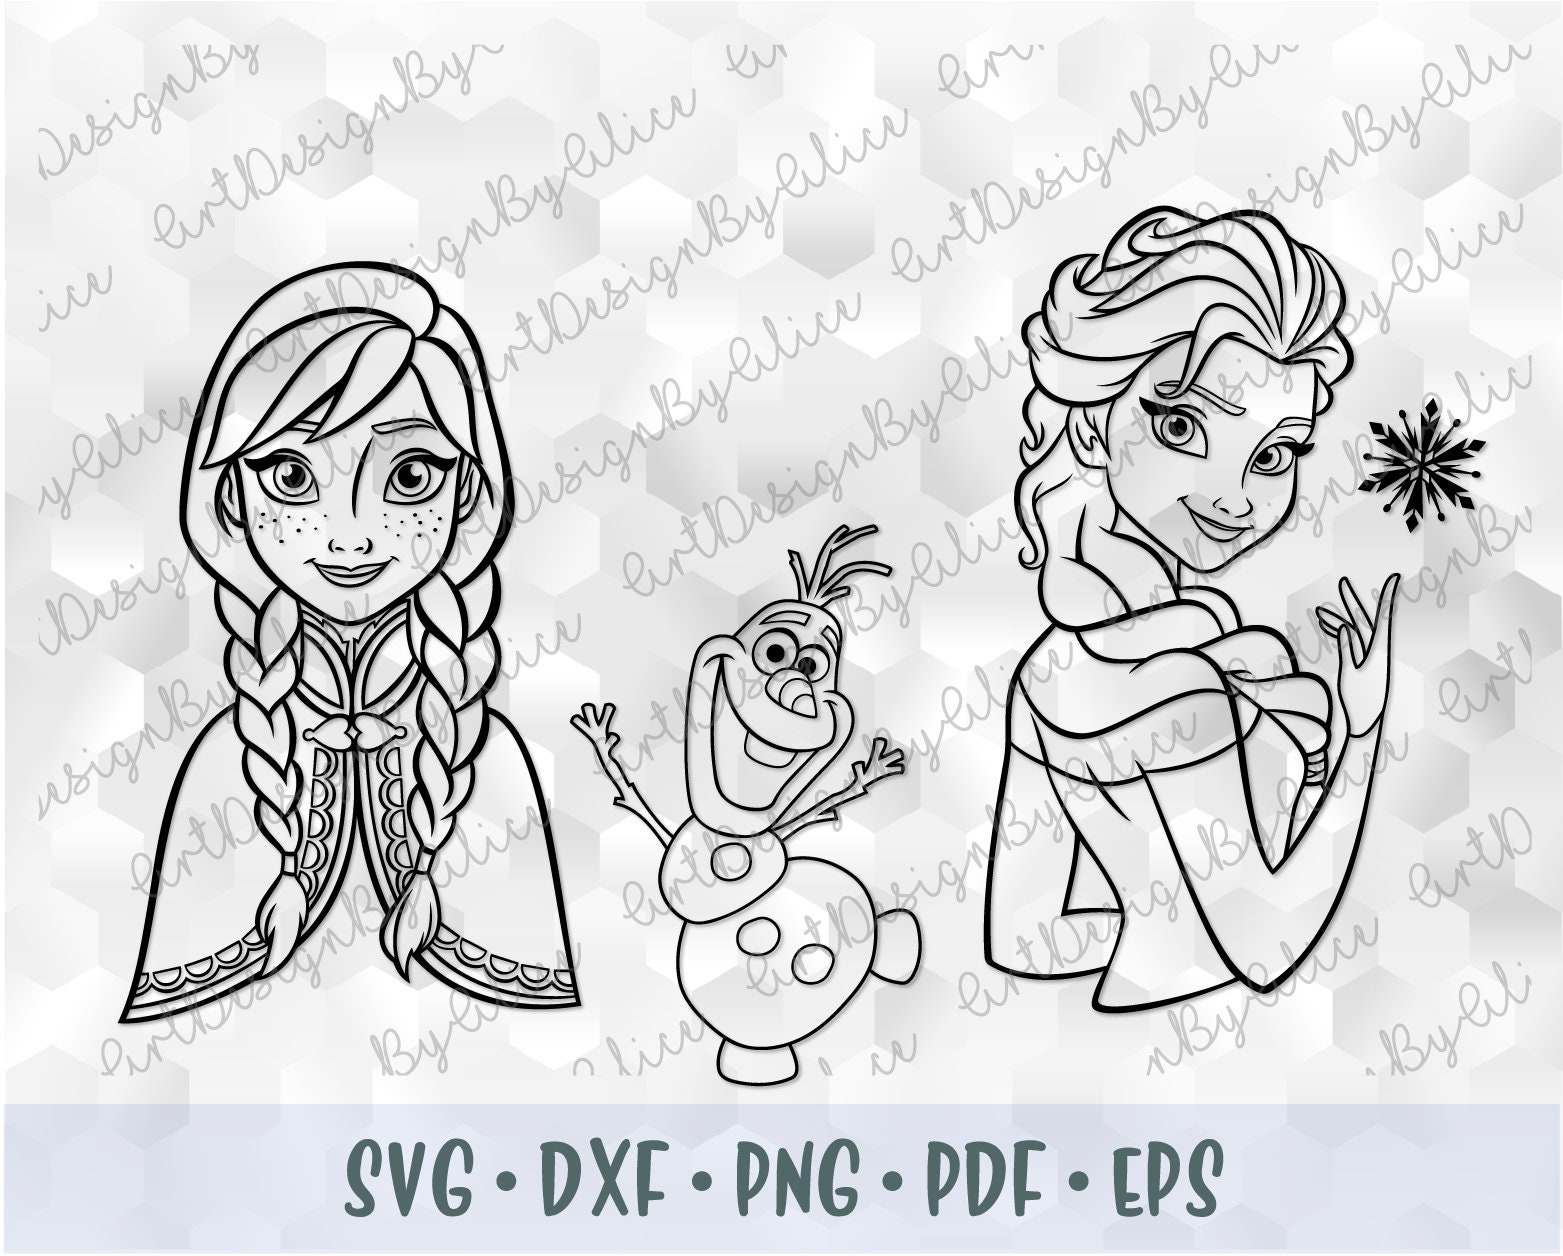 SVG PNG Sisters Anna Elsa Olaf Frozen Disney Princess Outline | Etsy